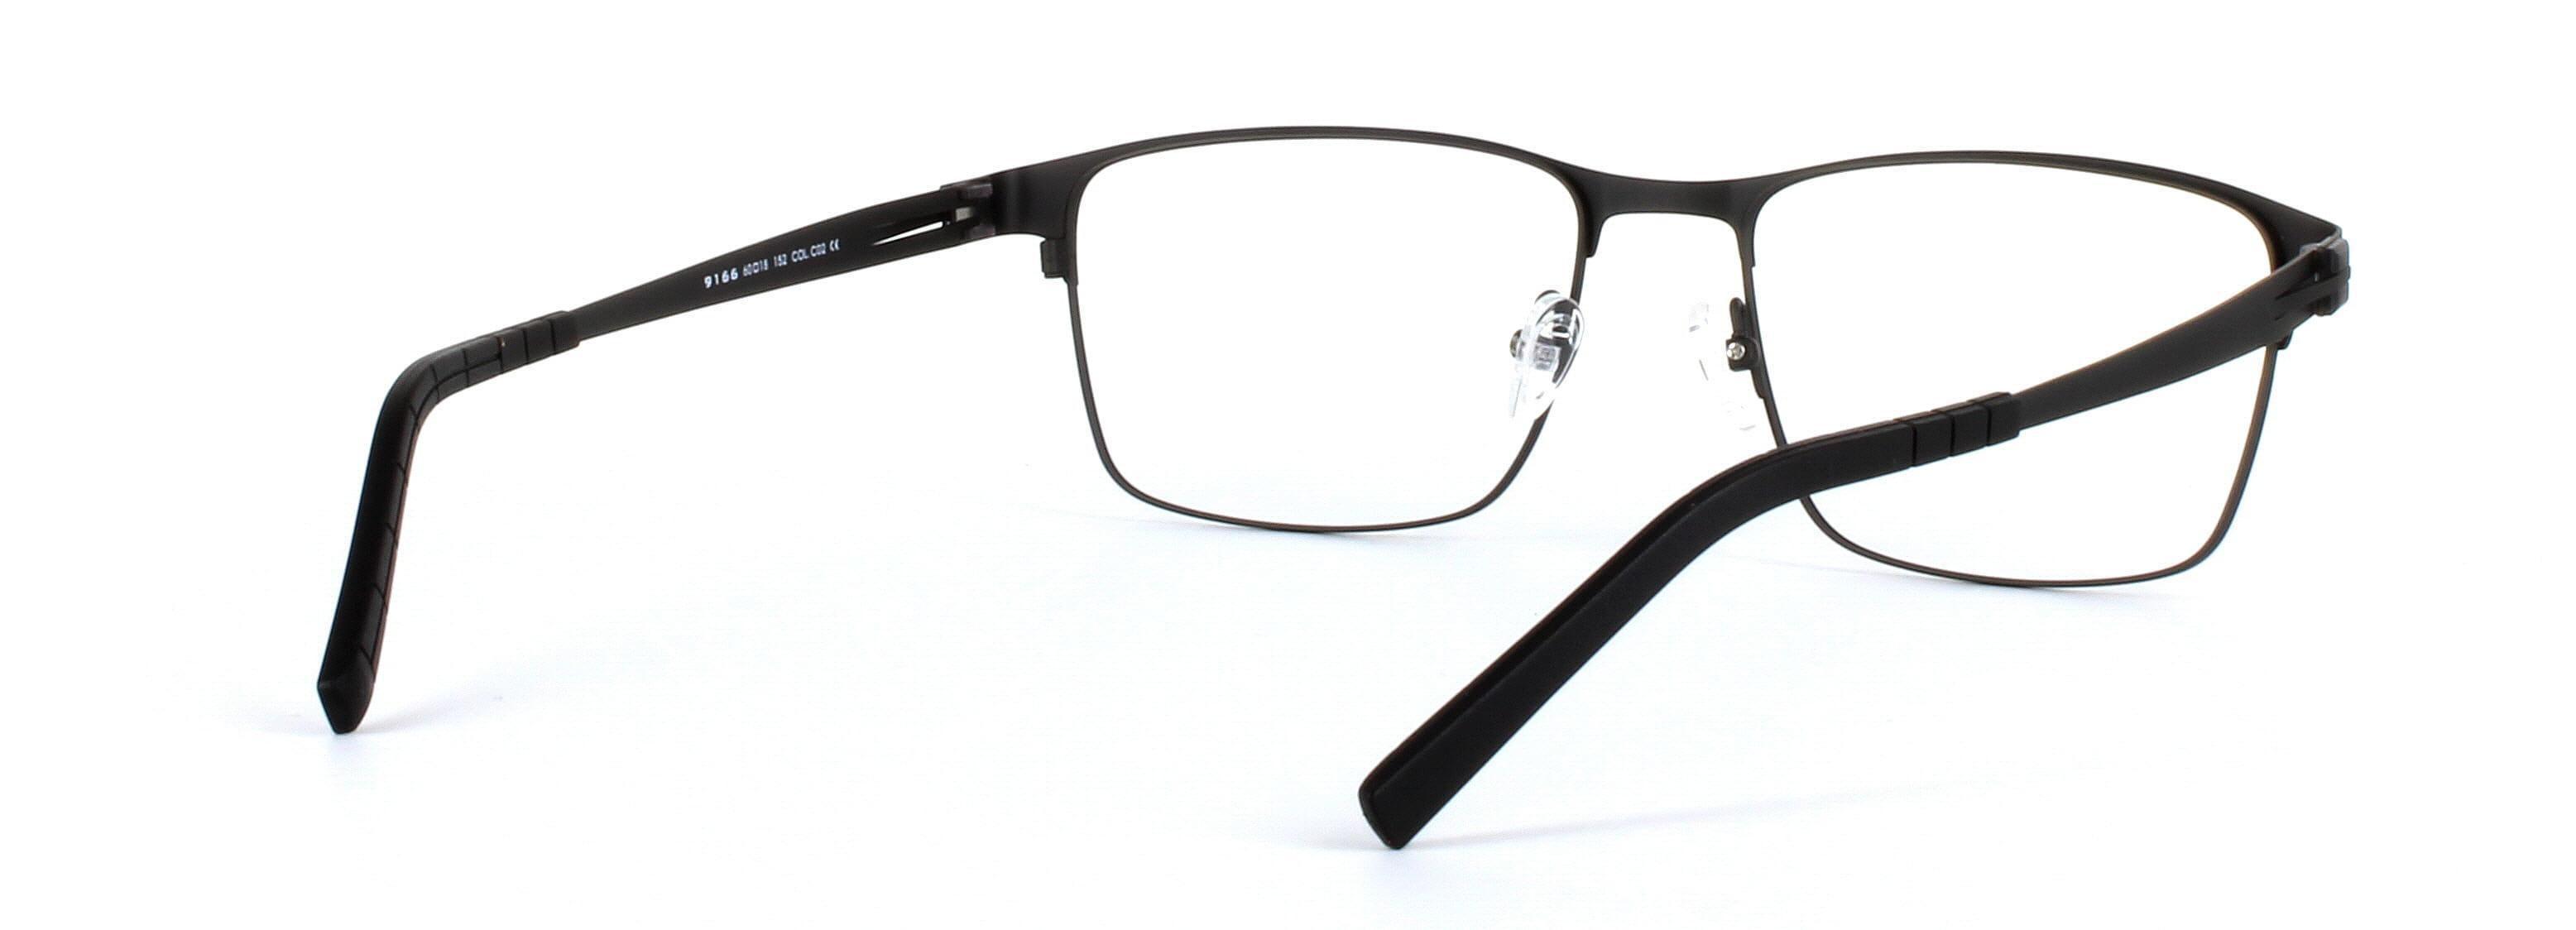 Divo Matt Black Full Rim Square Titanium Glasses - Image View 4